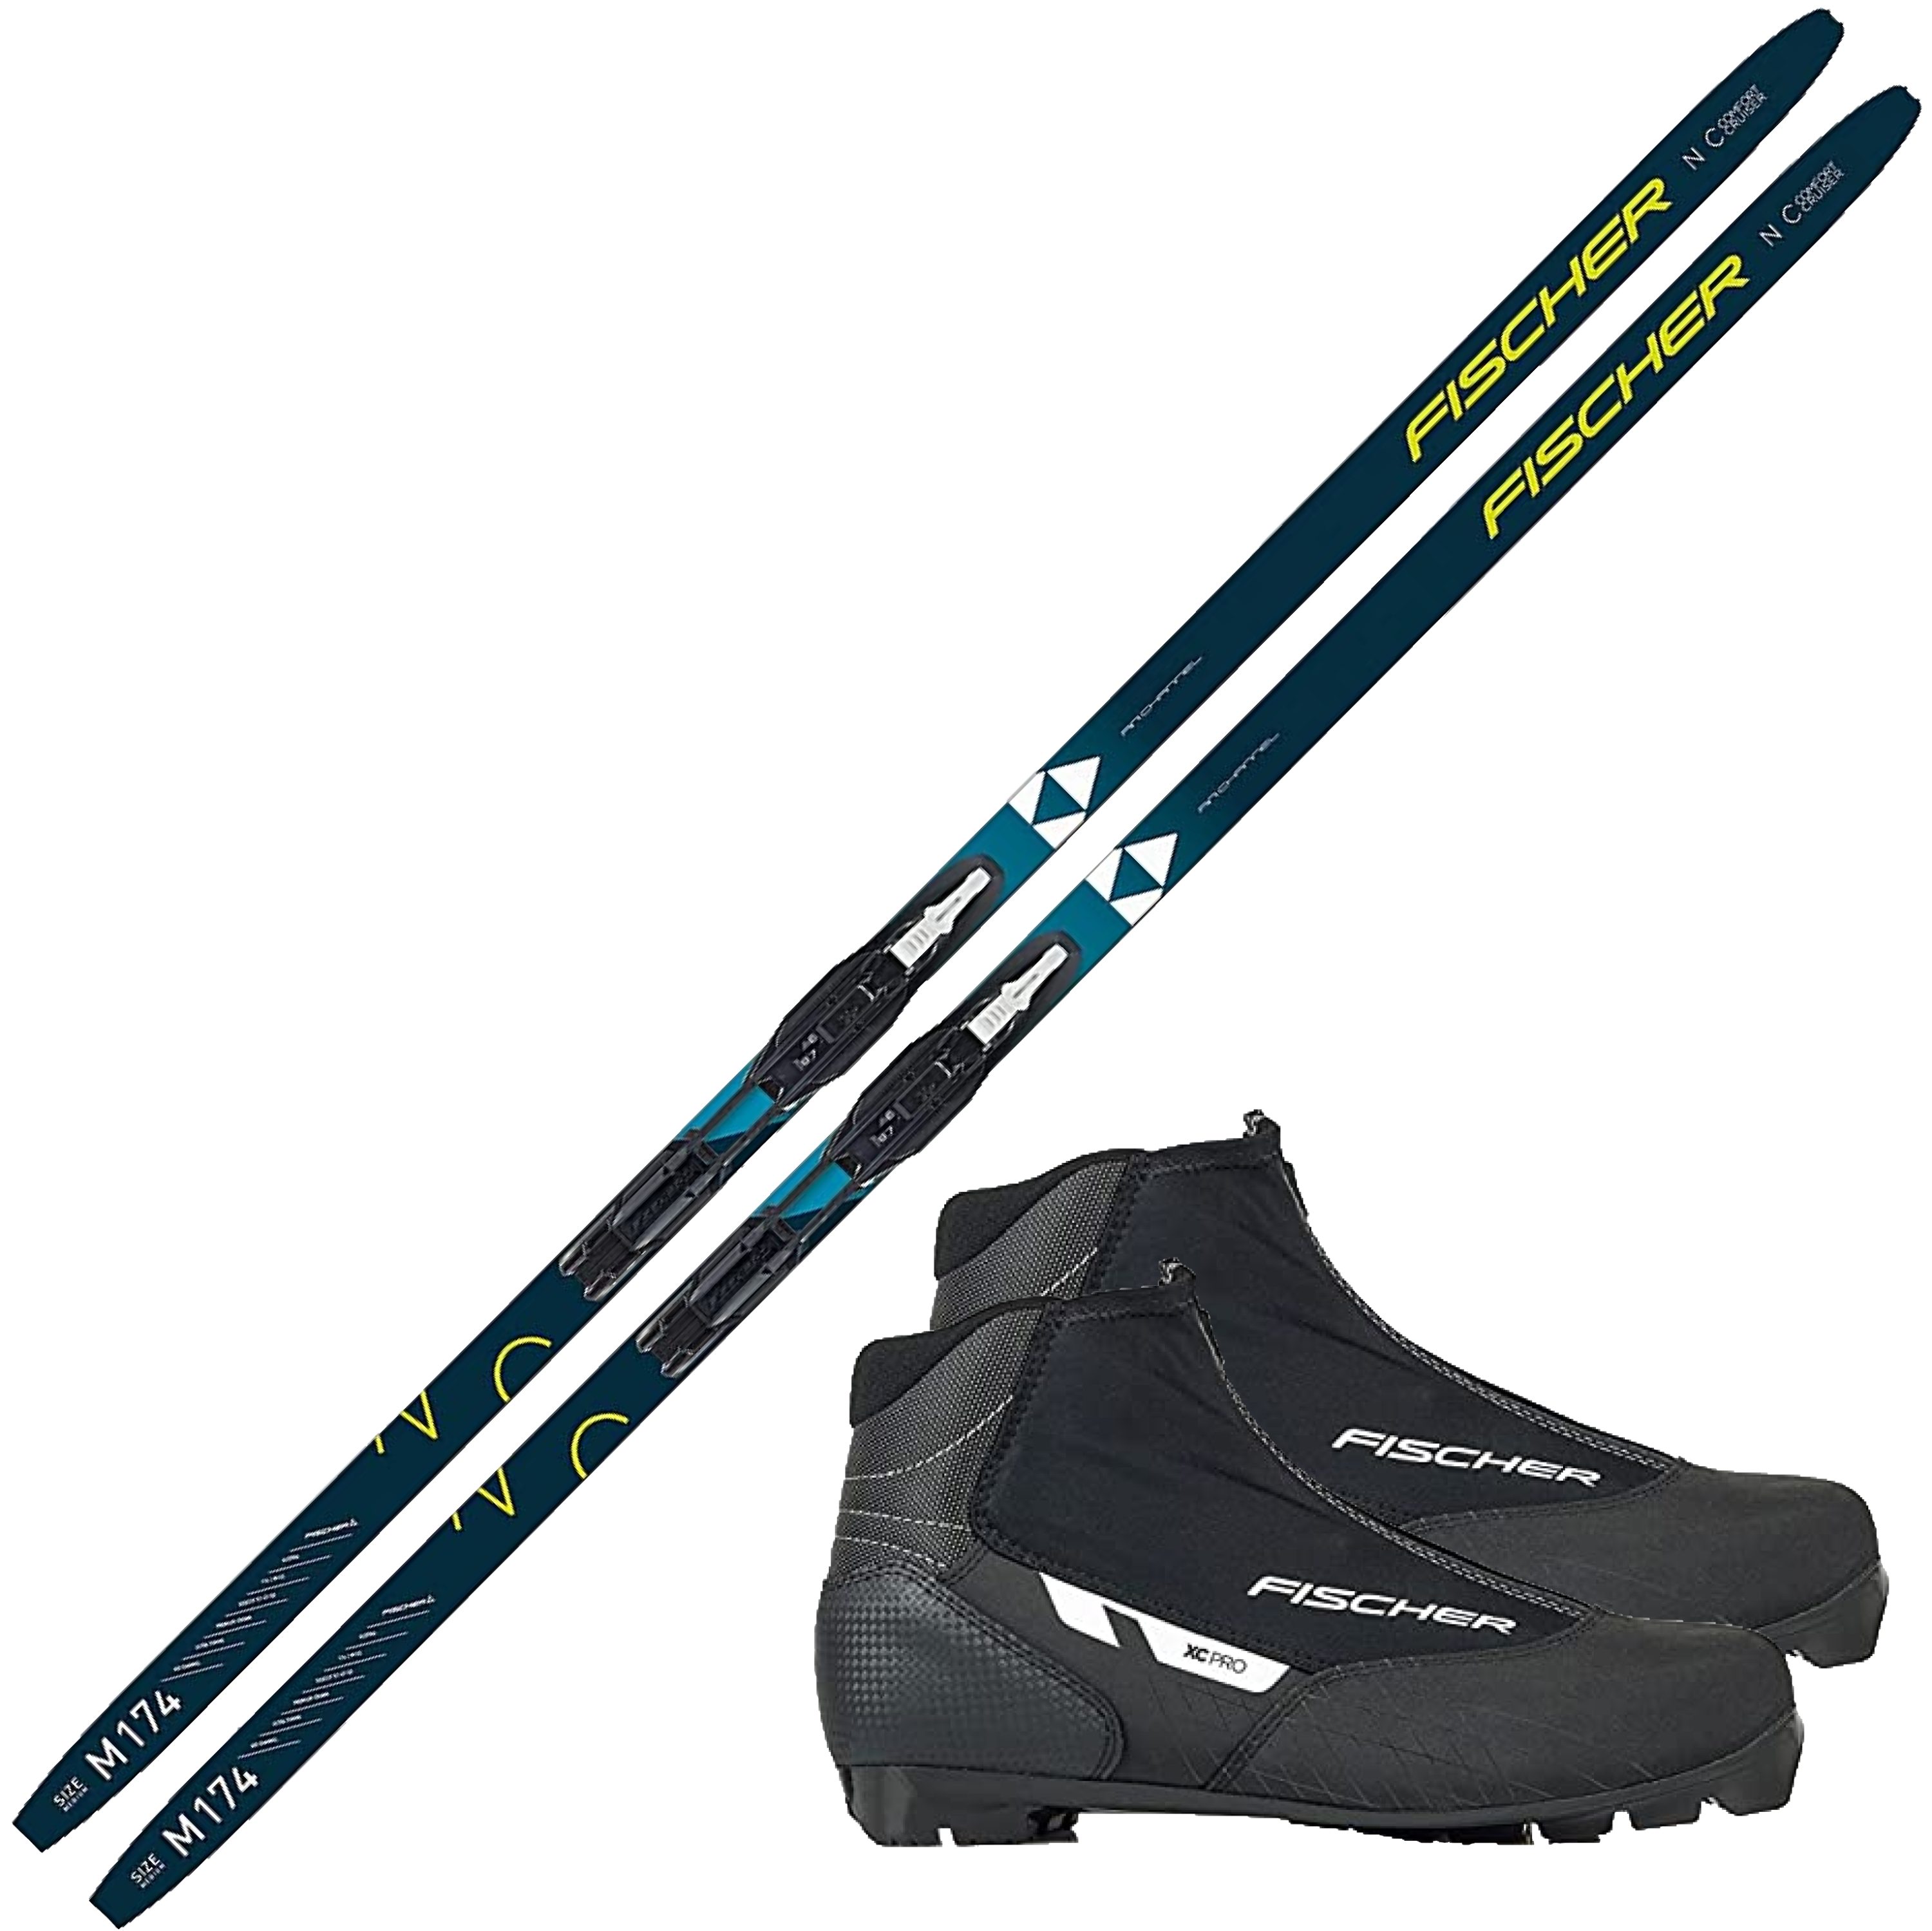 Fischer Sports Langlaufski Langlaufski-Set Fischer: Ski + Bindung + Schuh,  Langlaufski inkl. Bindung und Langlaufschuhe